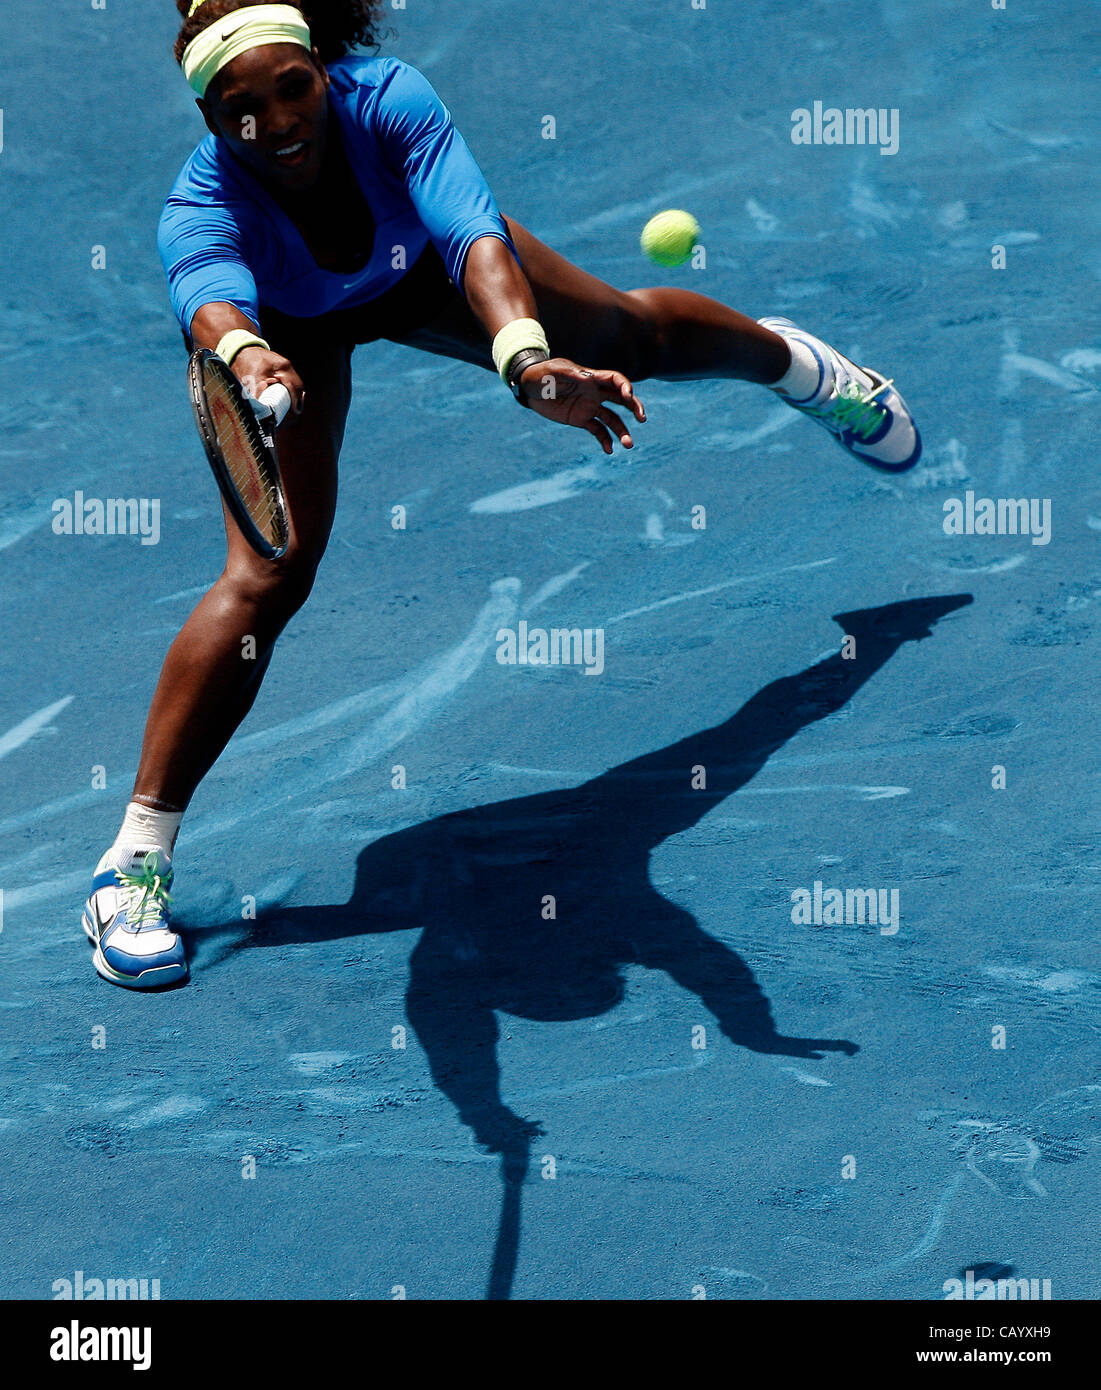 11.05.2012 Madrid, Spanien. Serena Williams in Aktion gegen Maria Sharapova im 1/4 Finale Einzel WTA Madrid Masters Tennisturnier. Stockfoto